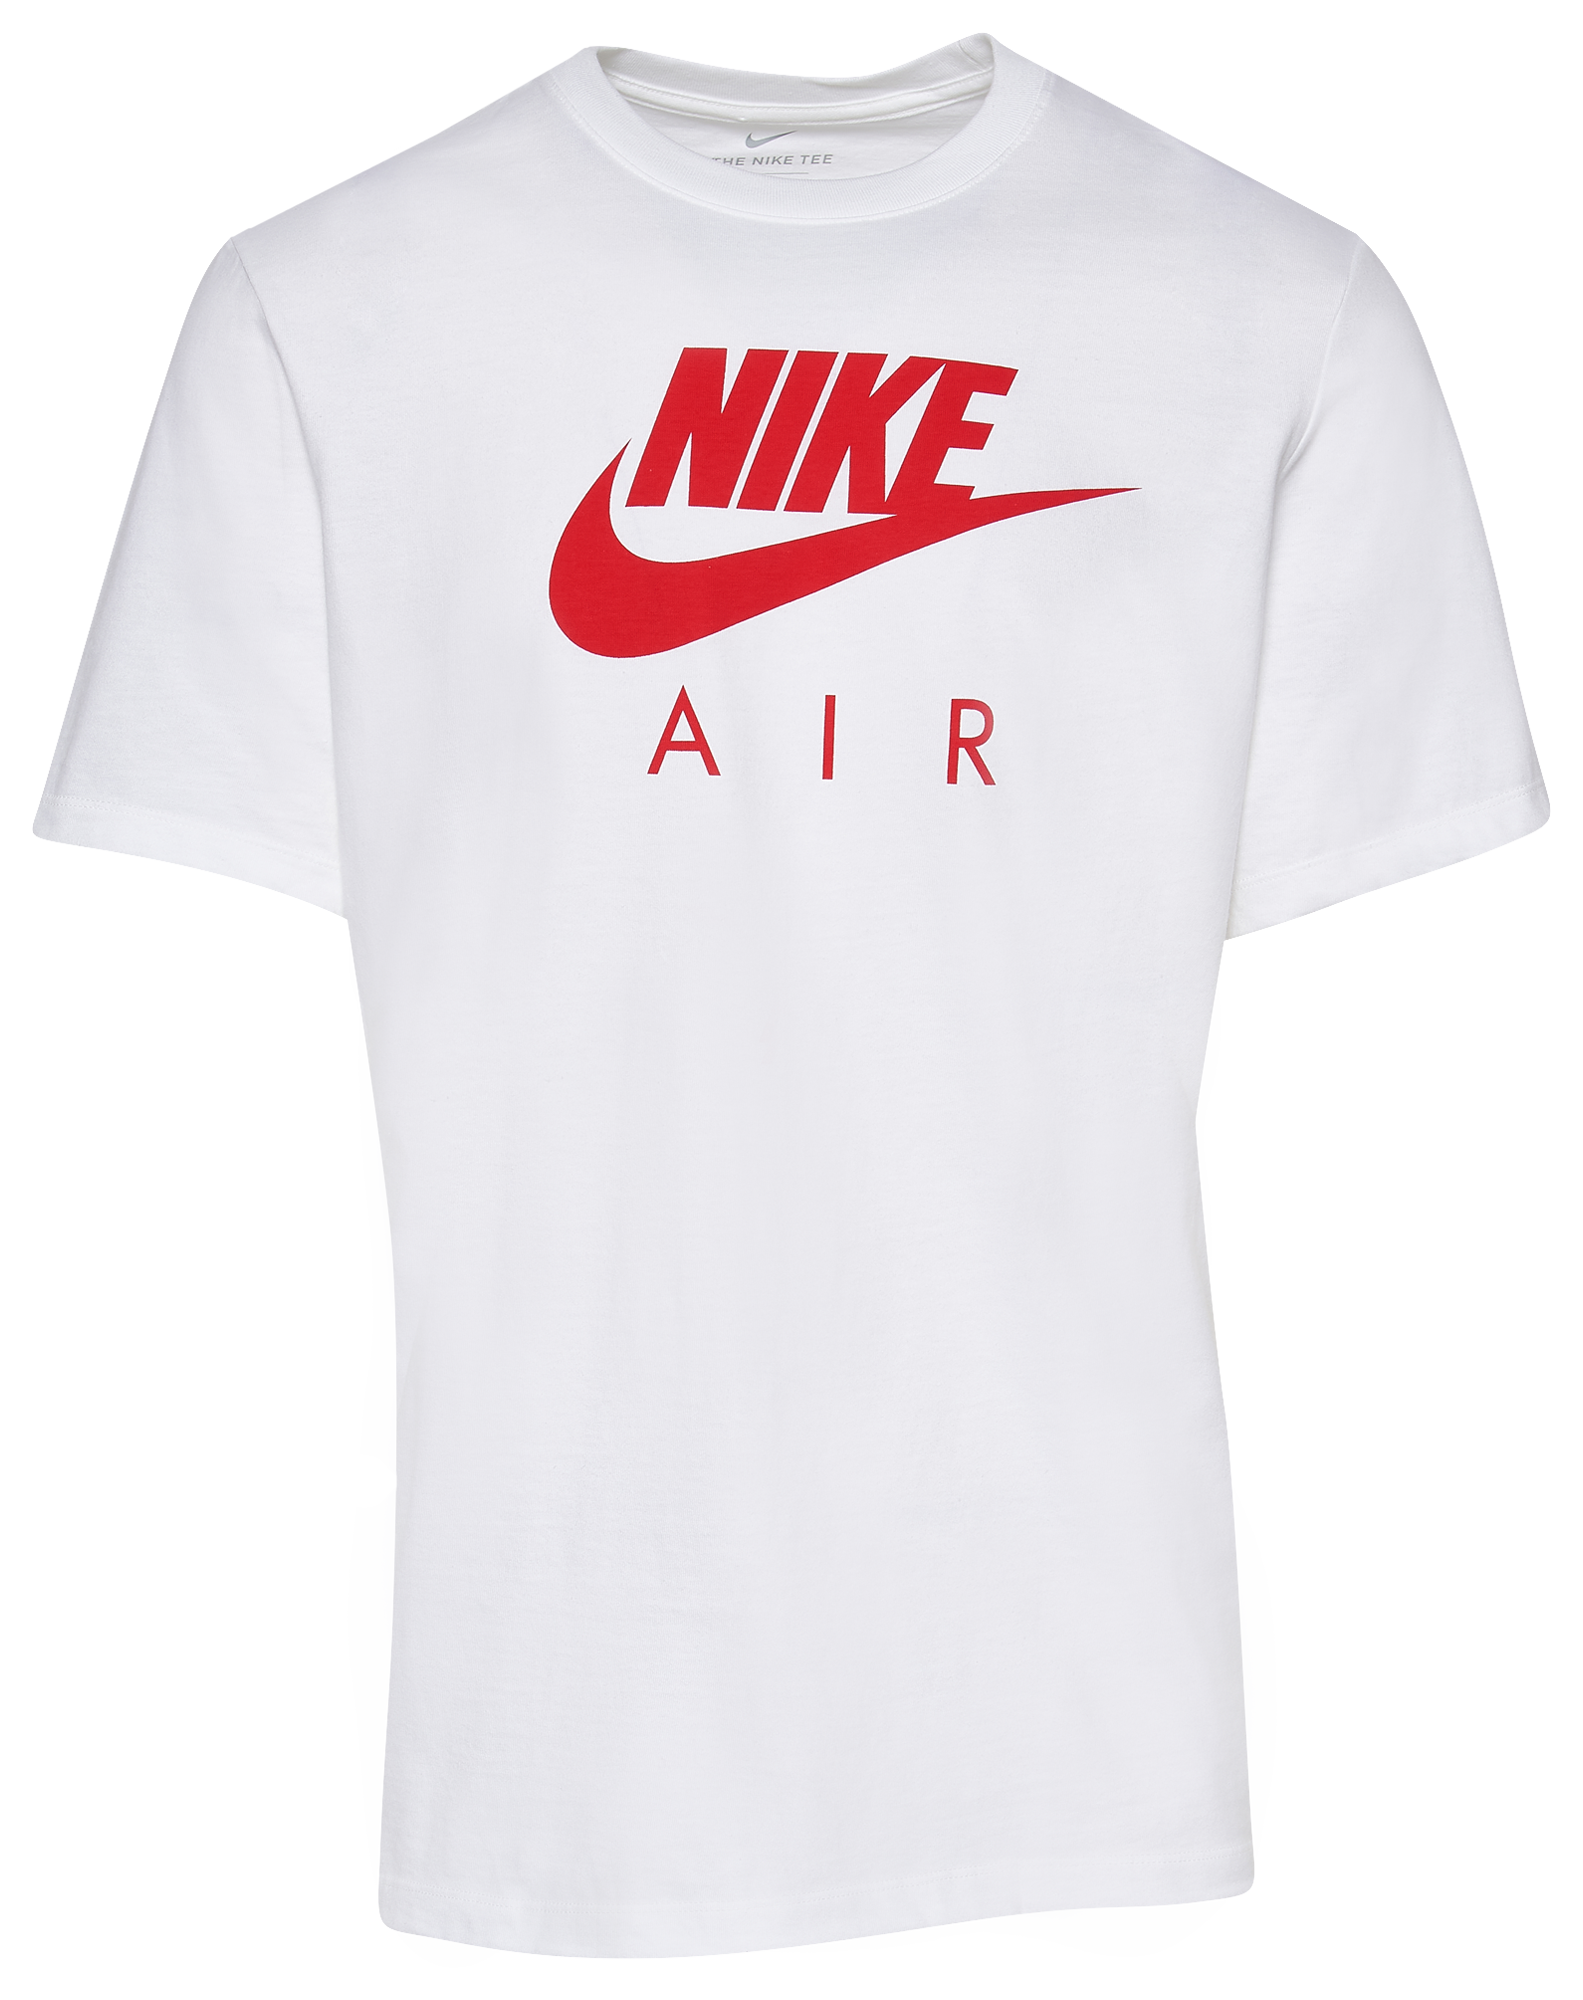 Nike Air T-Shirt  - Men's